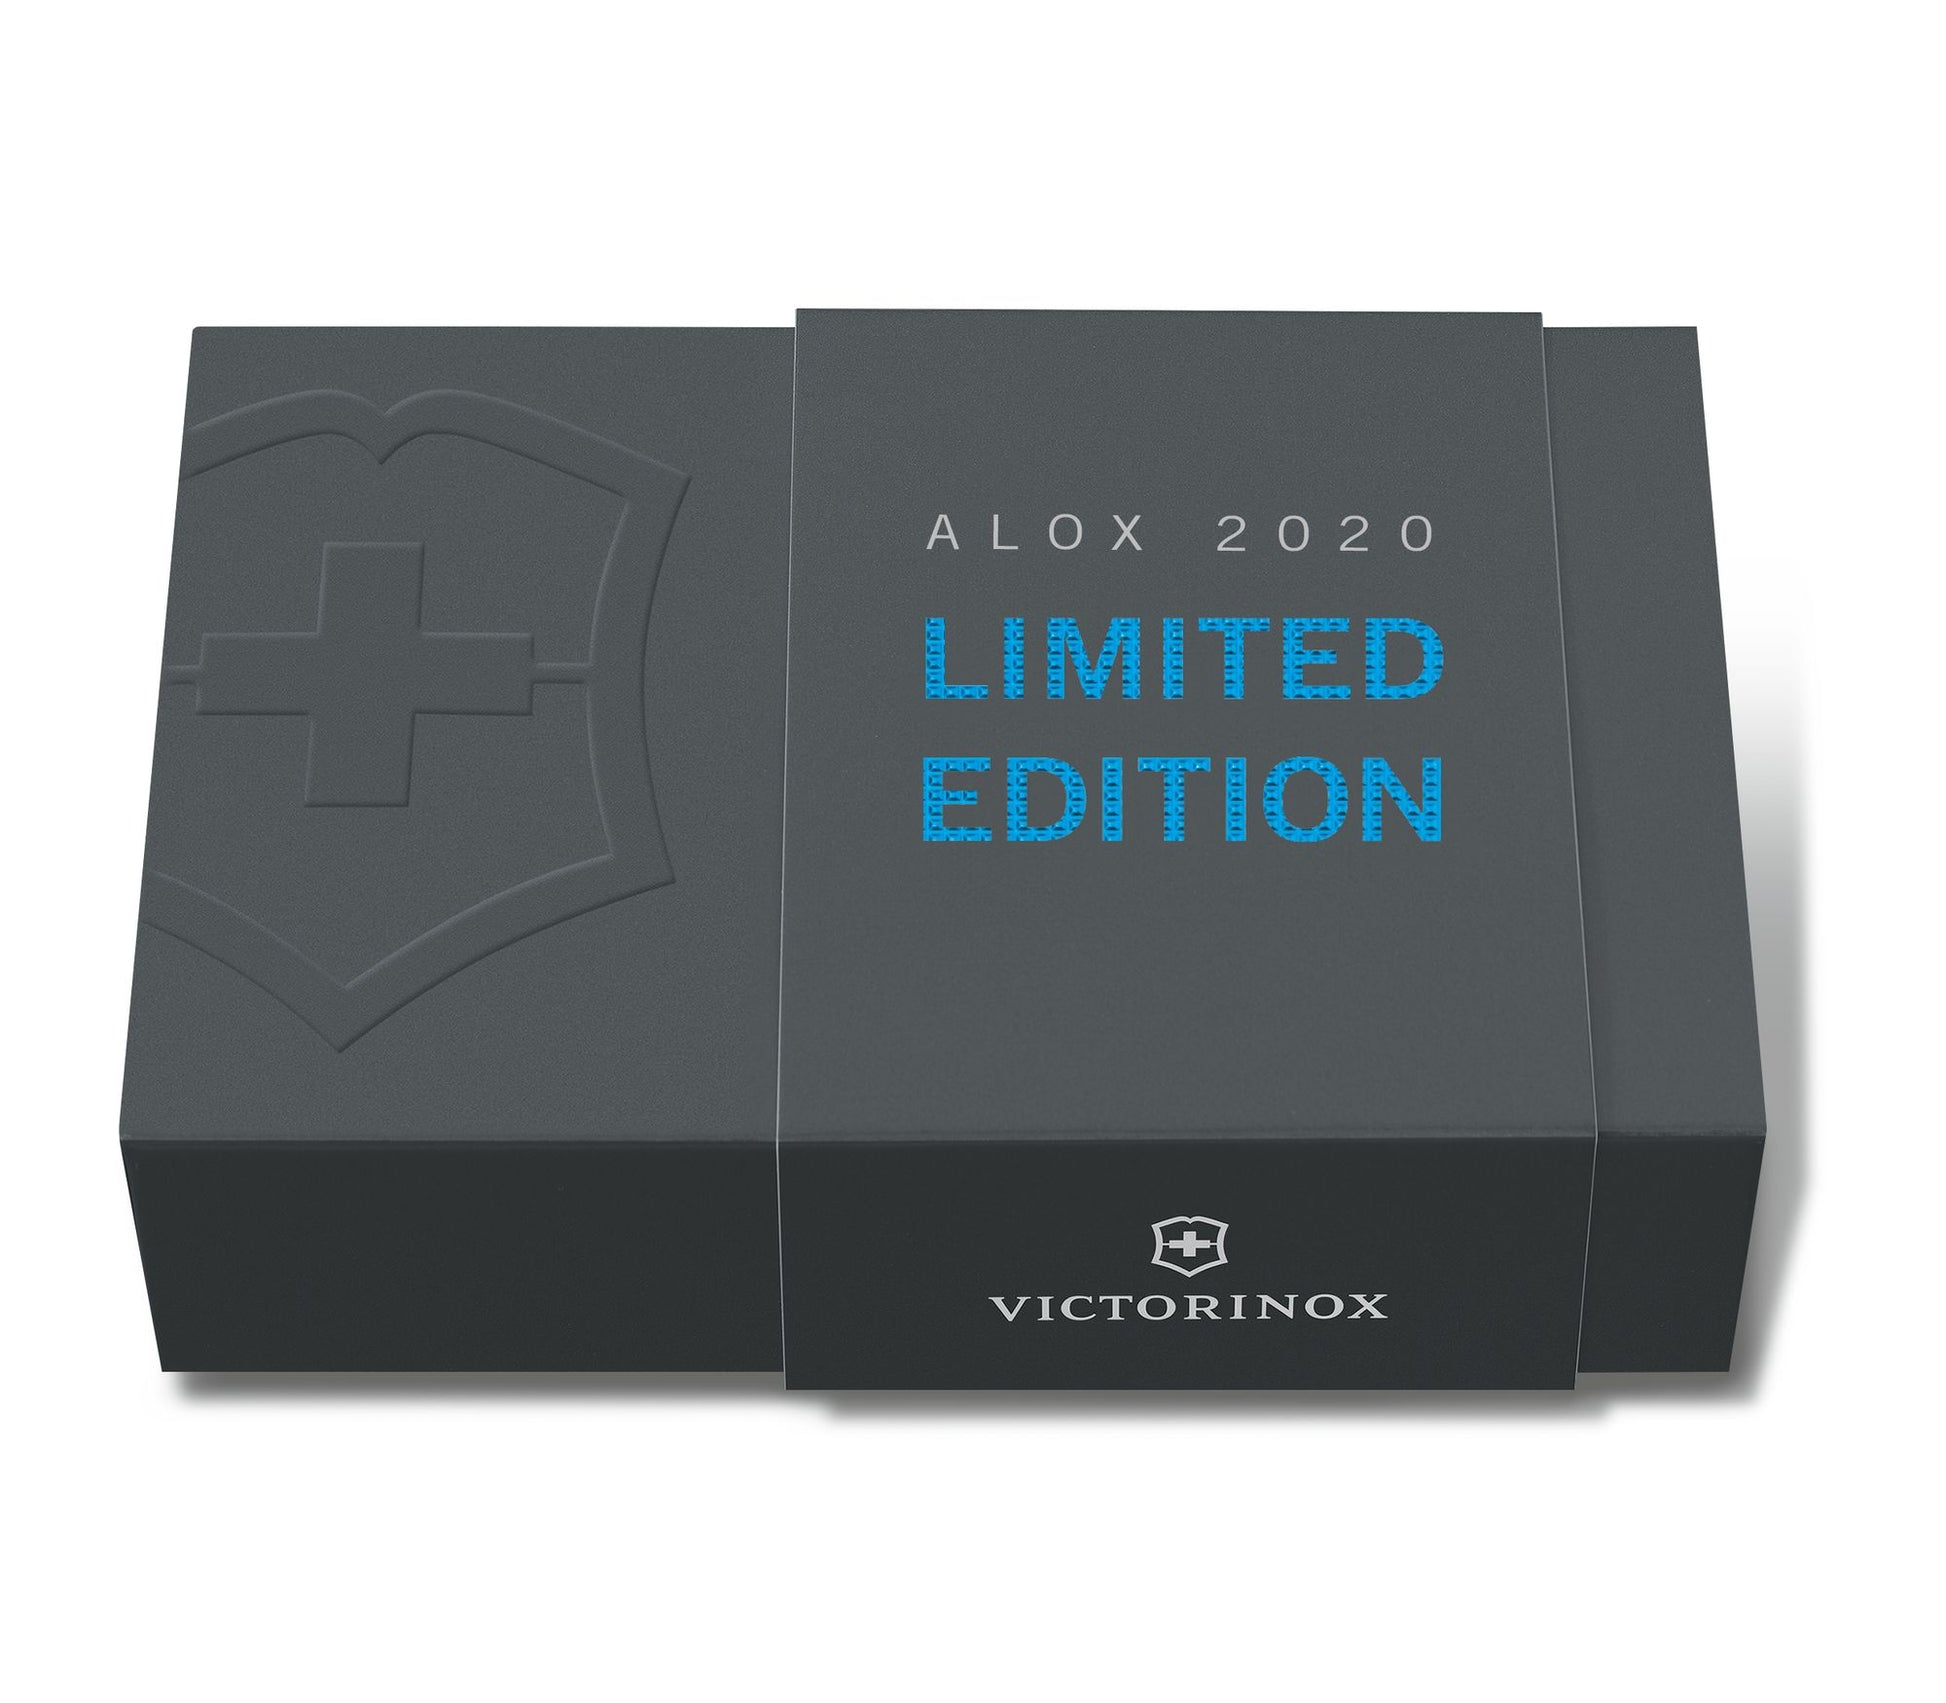 Victorinox coltello multiuso Classic Alox edizione limitata 2020